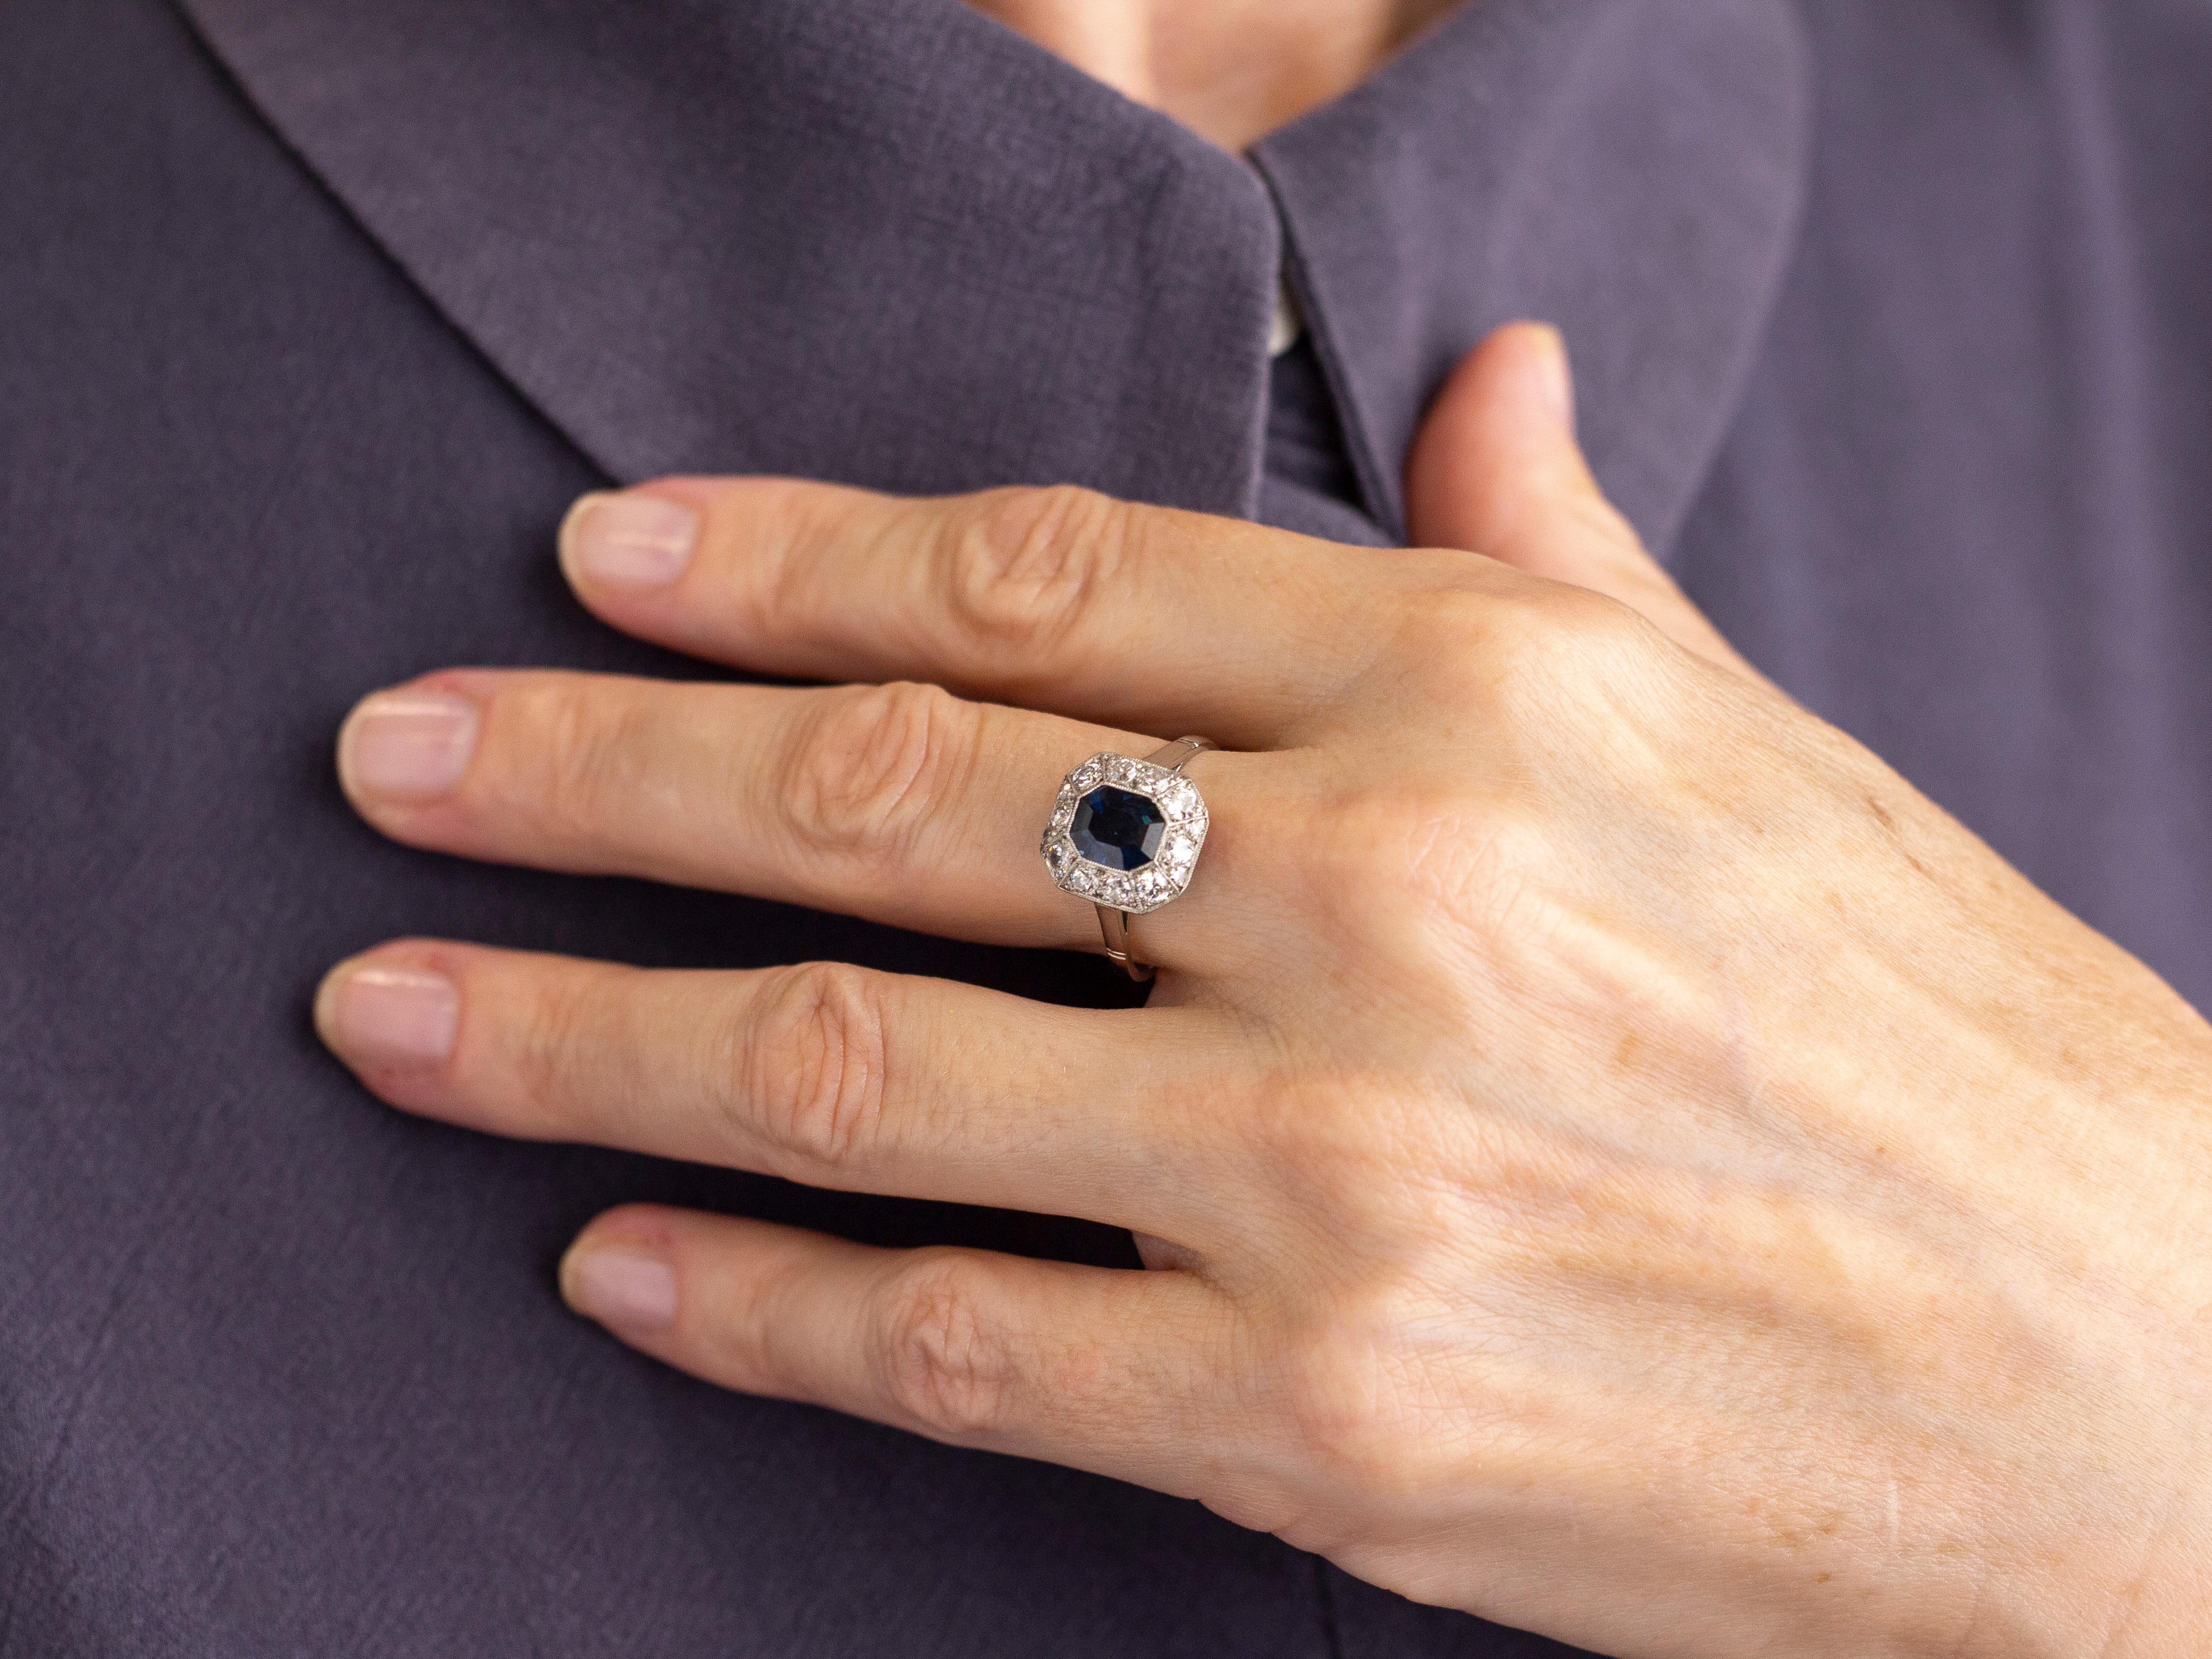 Dieser französische Art-Déco-Ring wurde von Hand aus Platin gefertigt und mit Diamanten und einem wunderschönen australischen Saphir besetzt. Der um 1920 gefertigte Ring trägt in der Mitte einen achteckigen, stufenförmig geschliffenen australischen